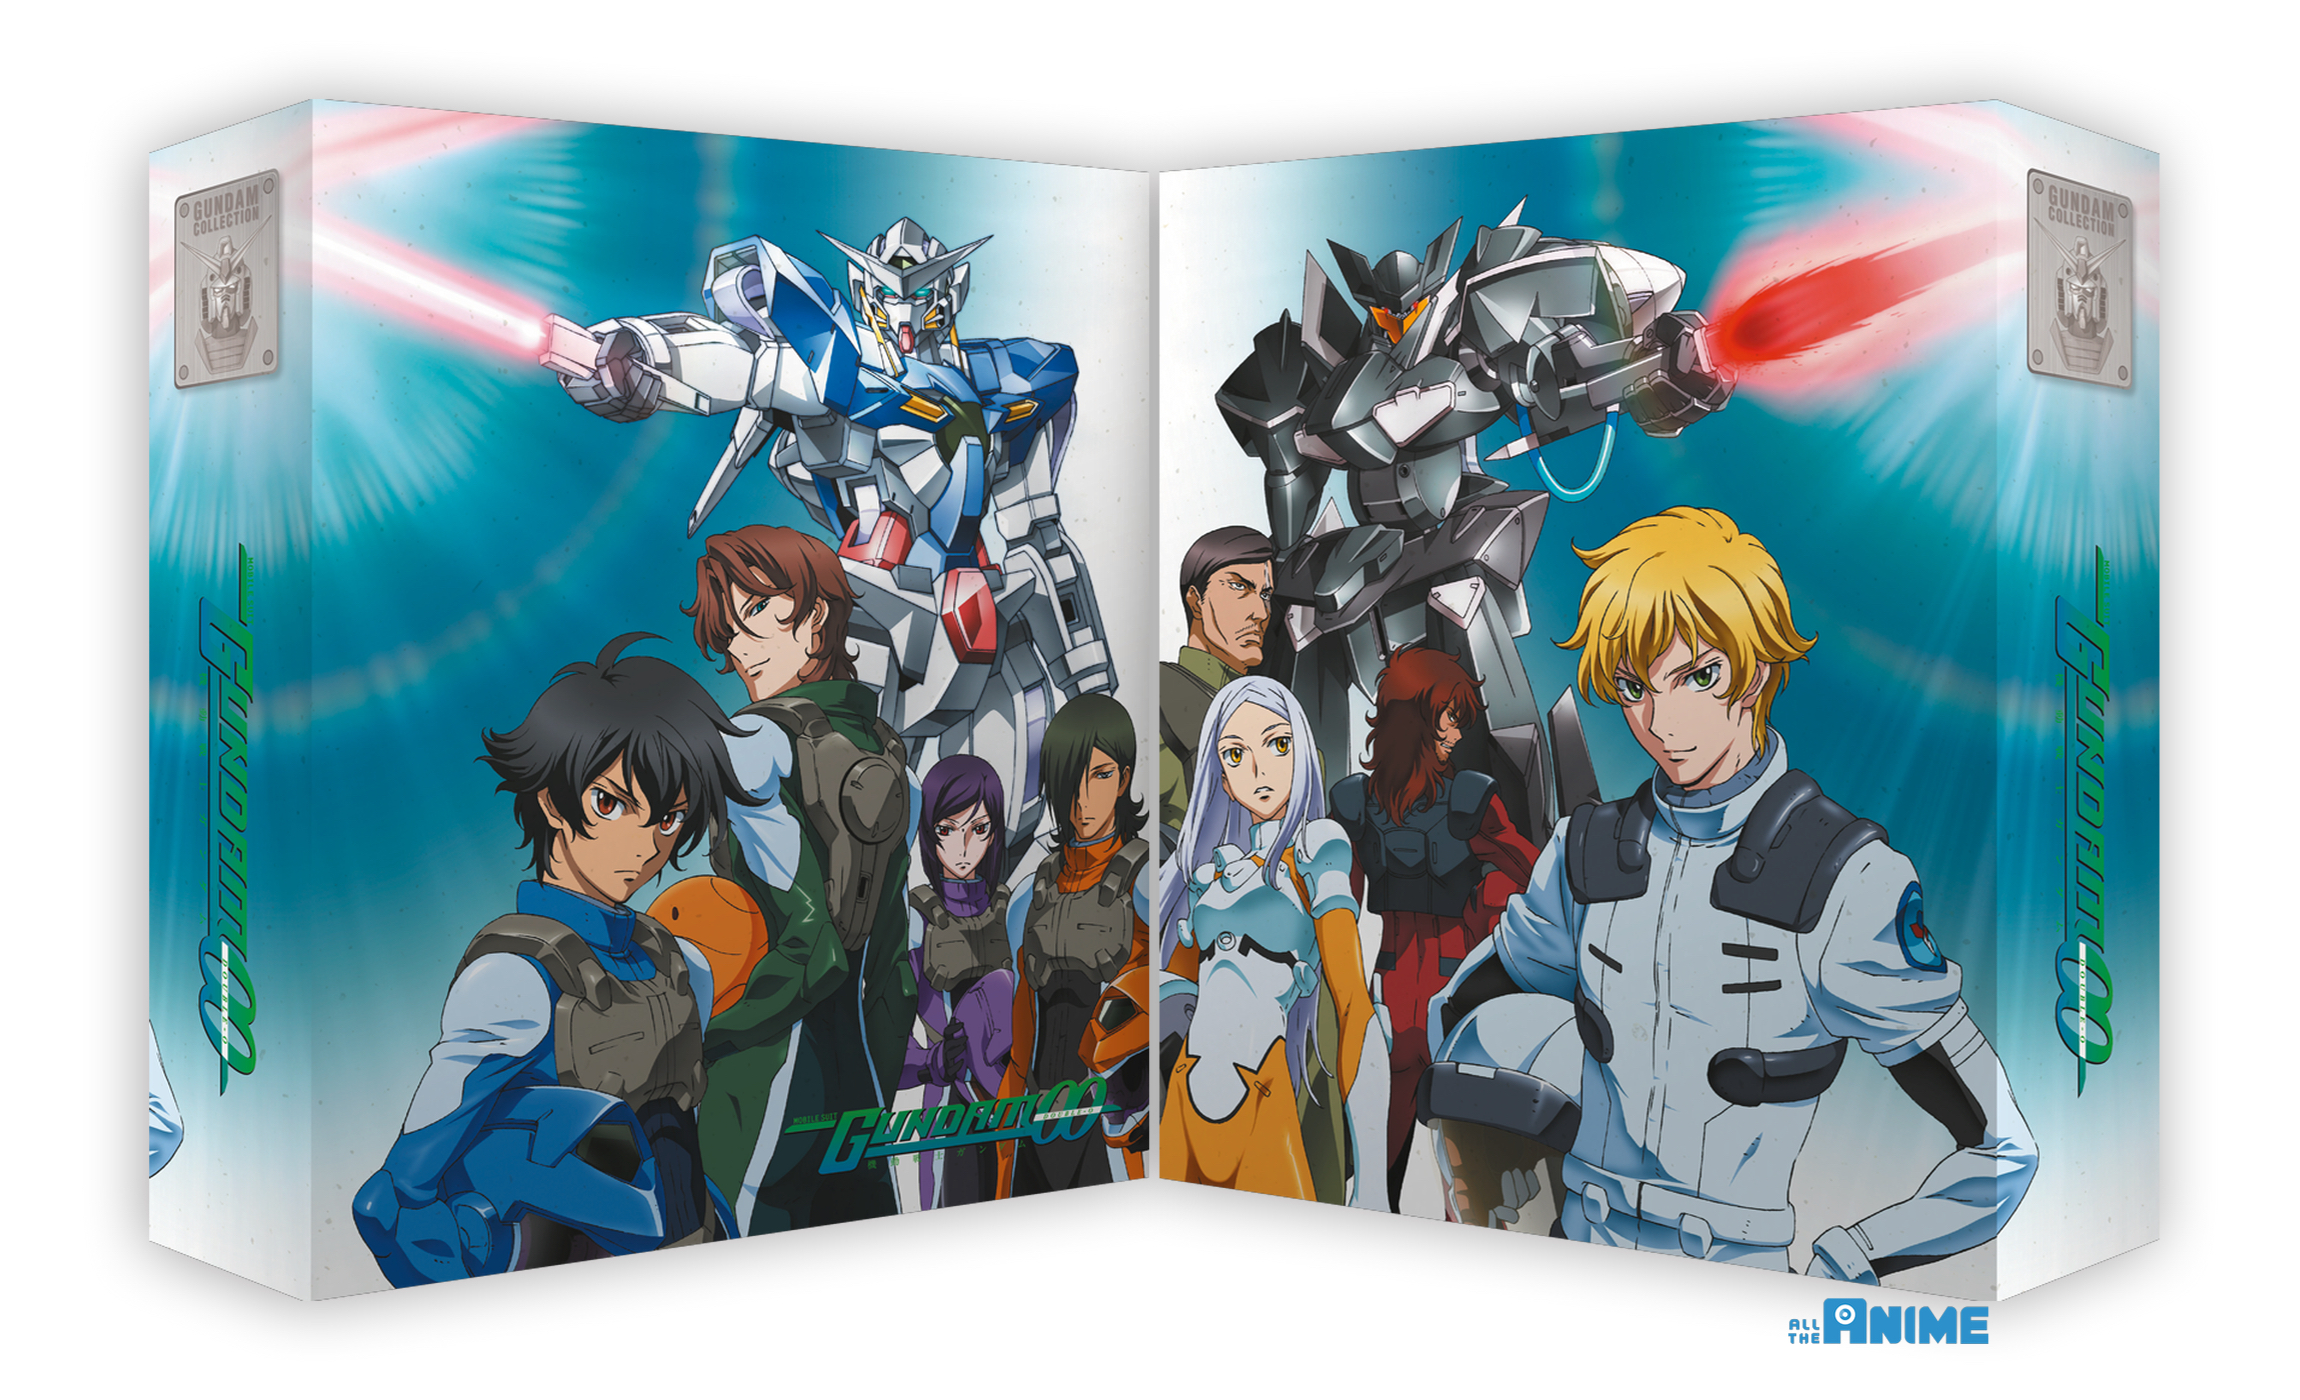 Collectibles Japan Manga Mobile Suit Gundam 00 2nd Season 1 4 Complete Set Cocos Com De